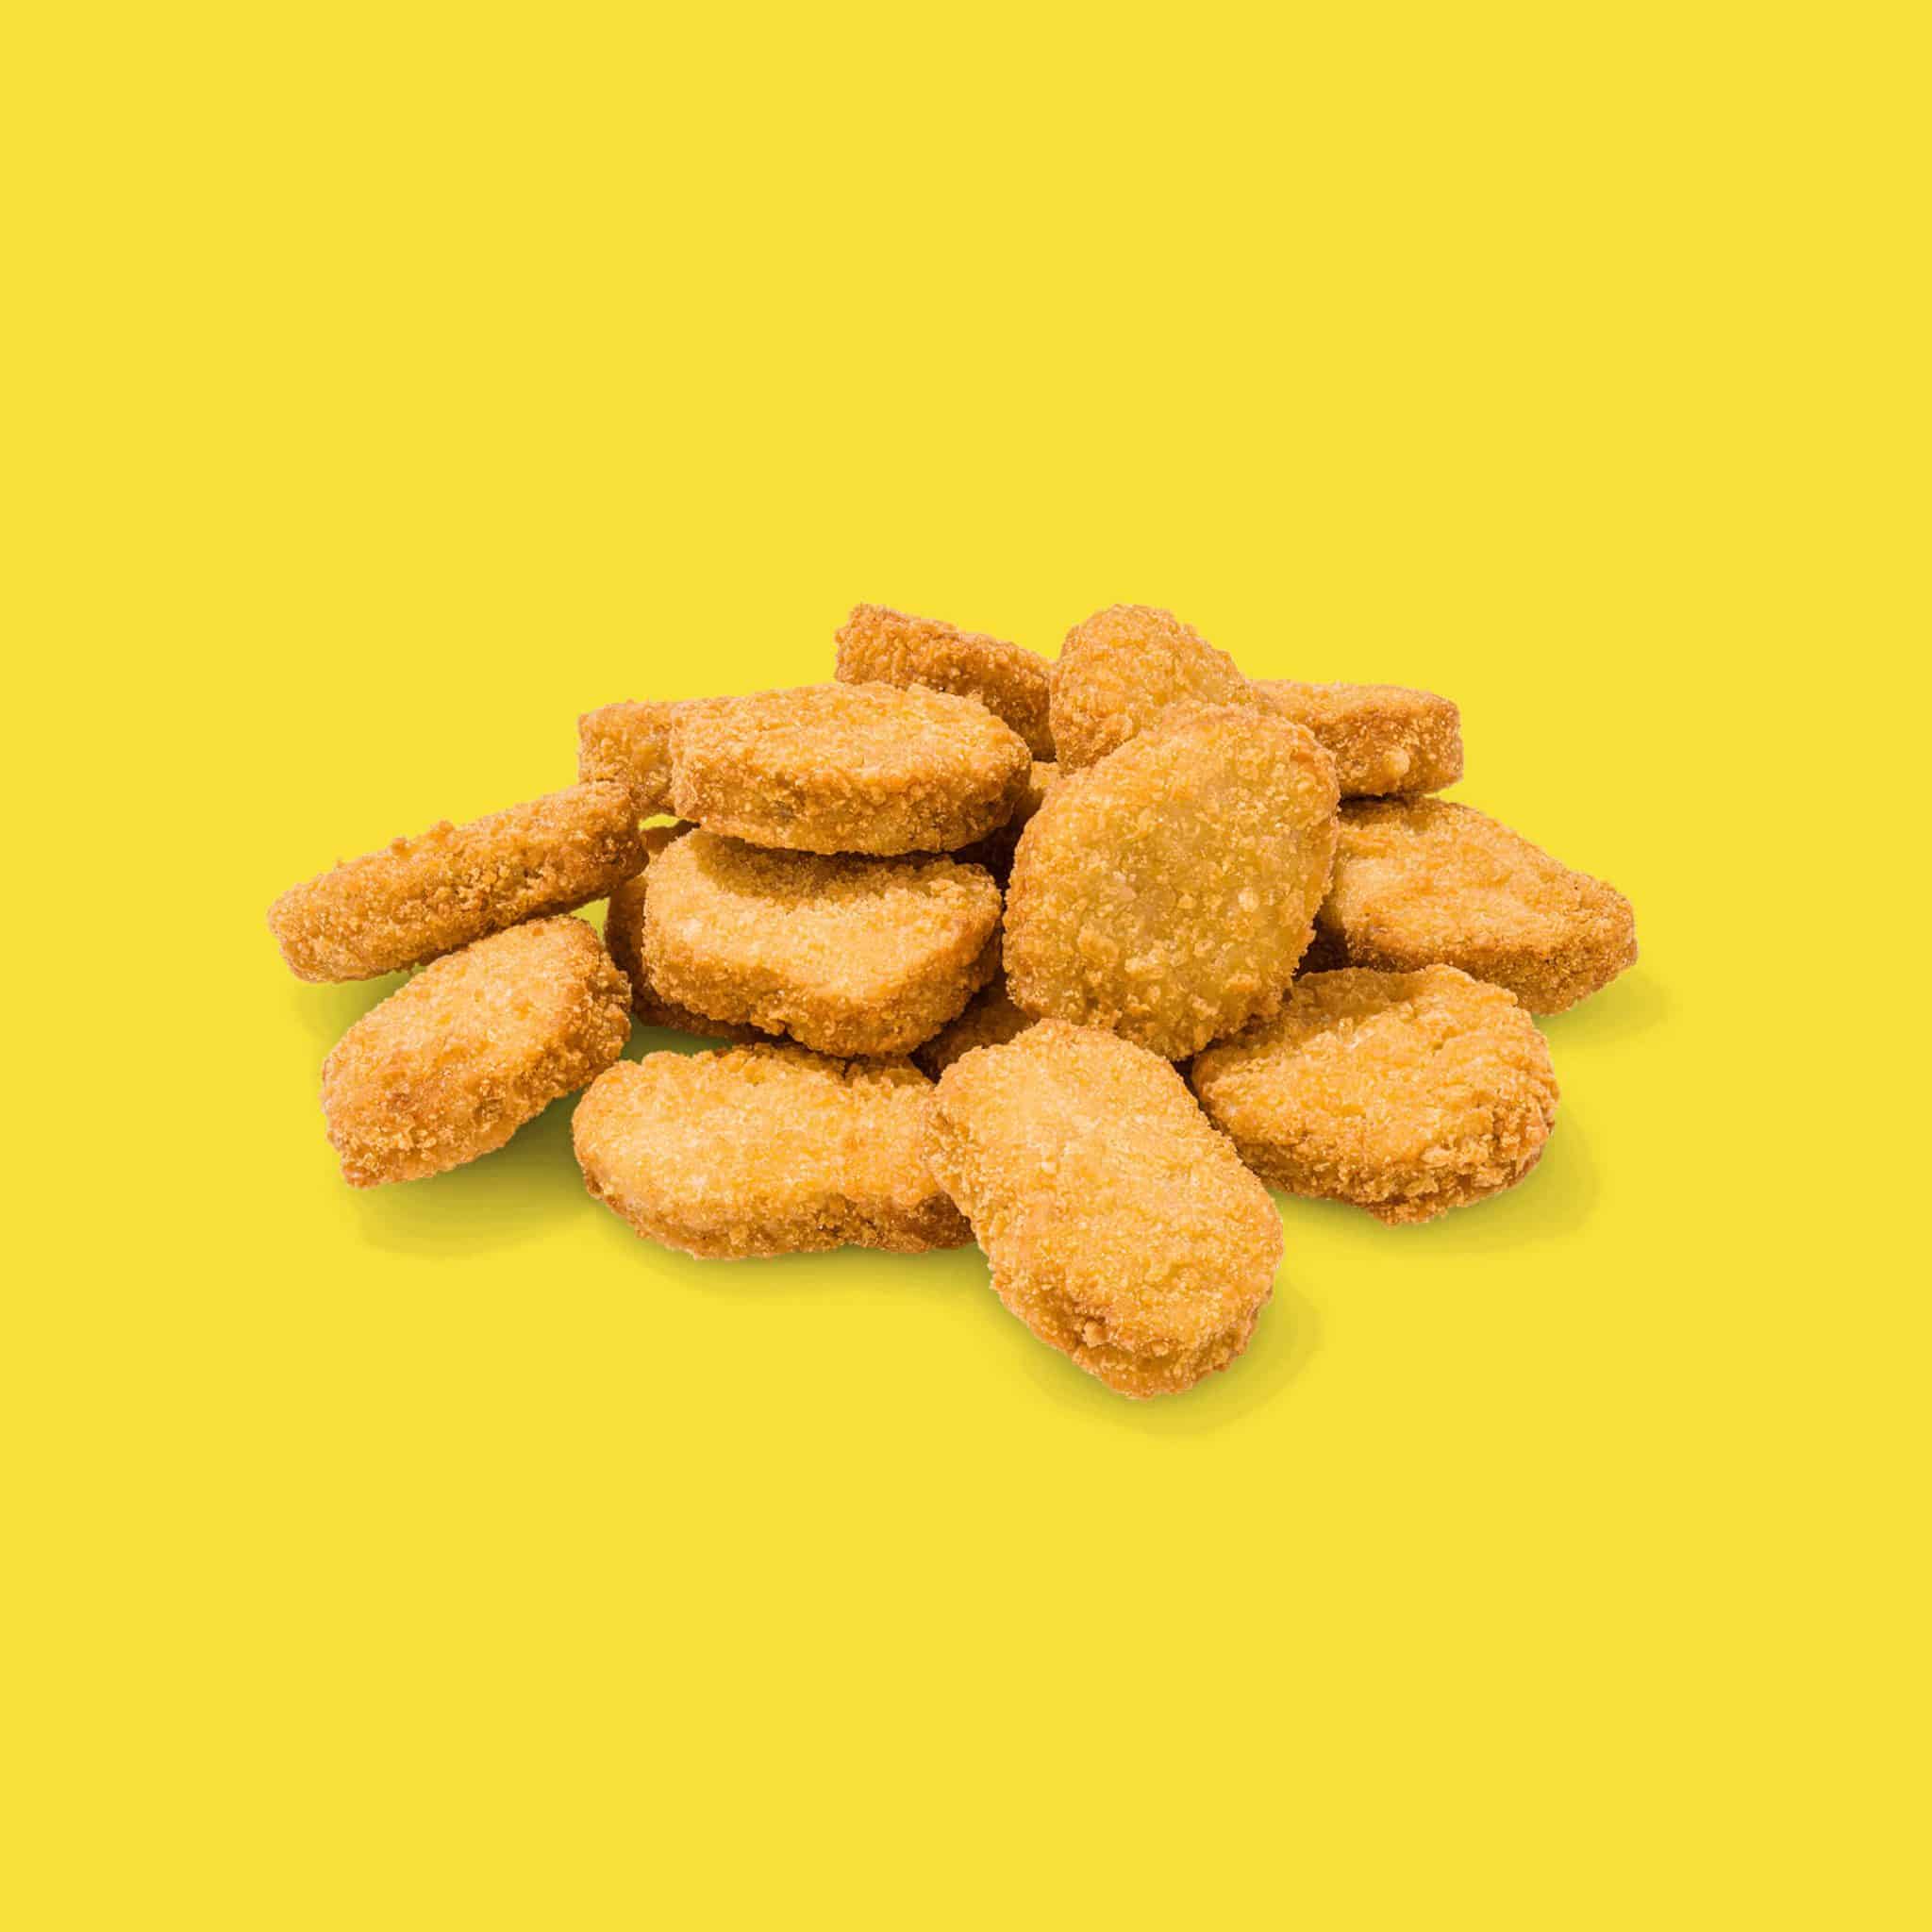 Vegan Chicken Nuggets